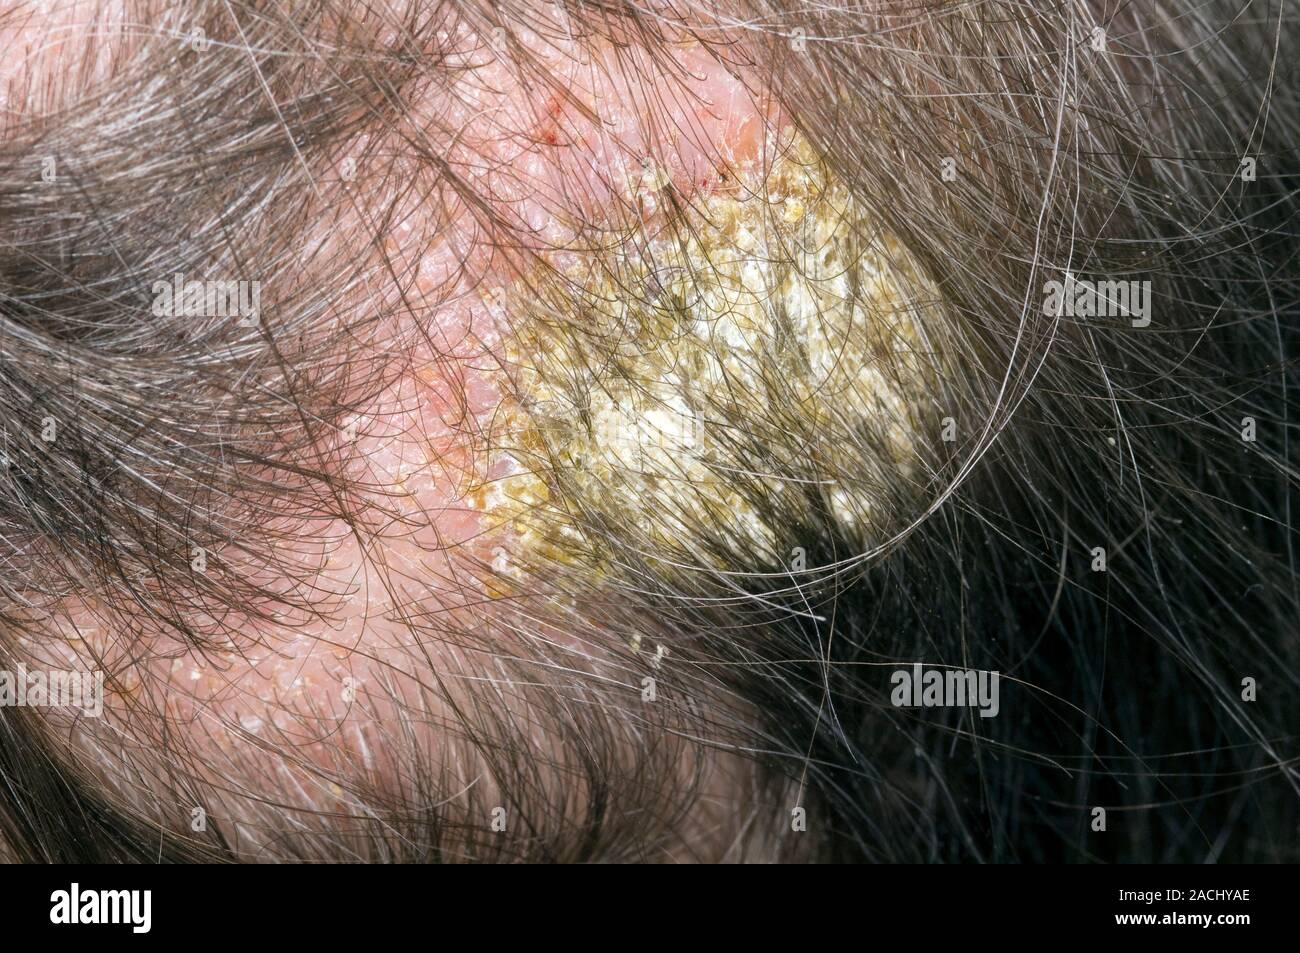 Close-up de eccema infectado en el cuero cabelludo de la cabeza en un alcohólico, de 70 años, paciente que se descuida a sí misma. eccema es una condición común de la